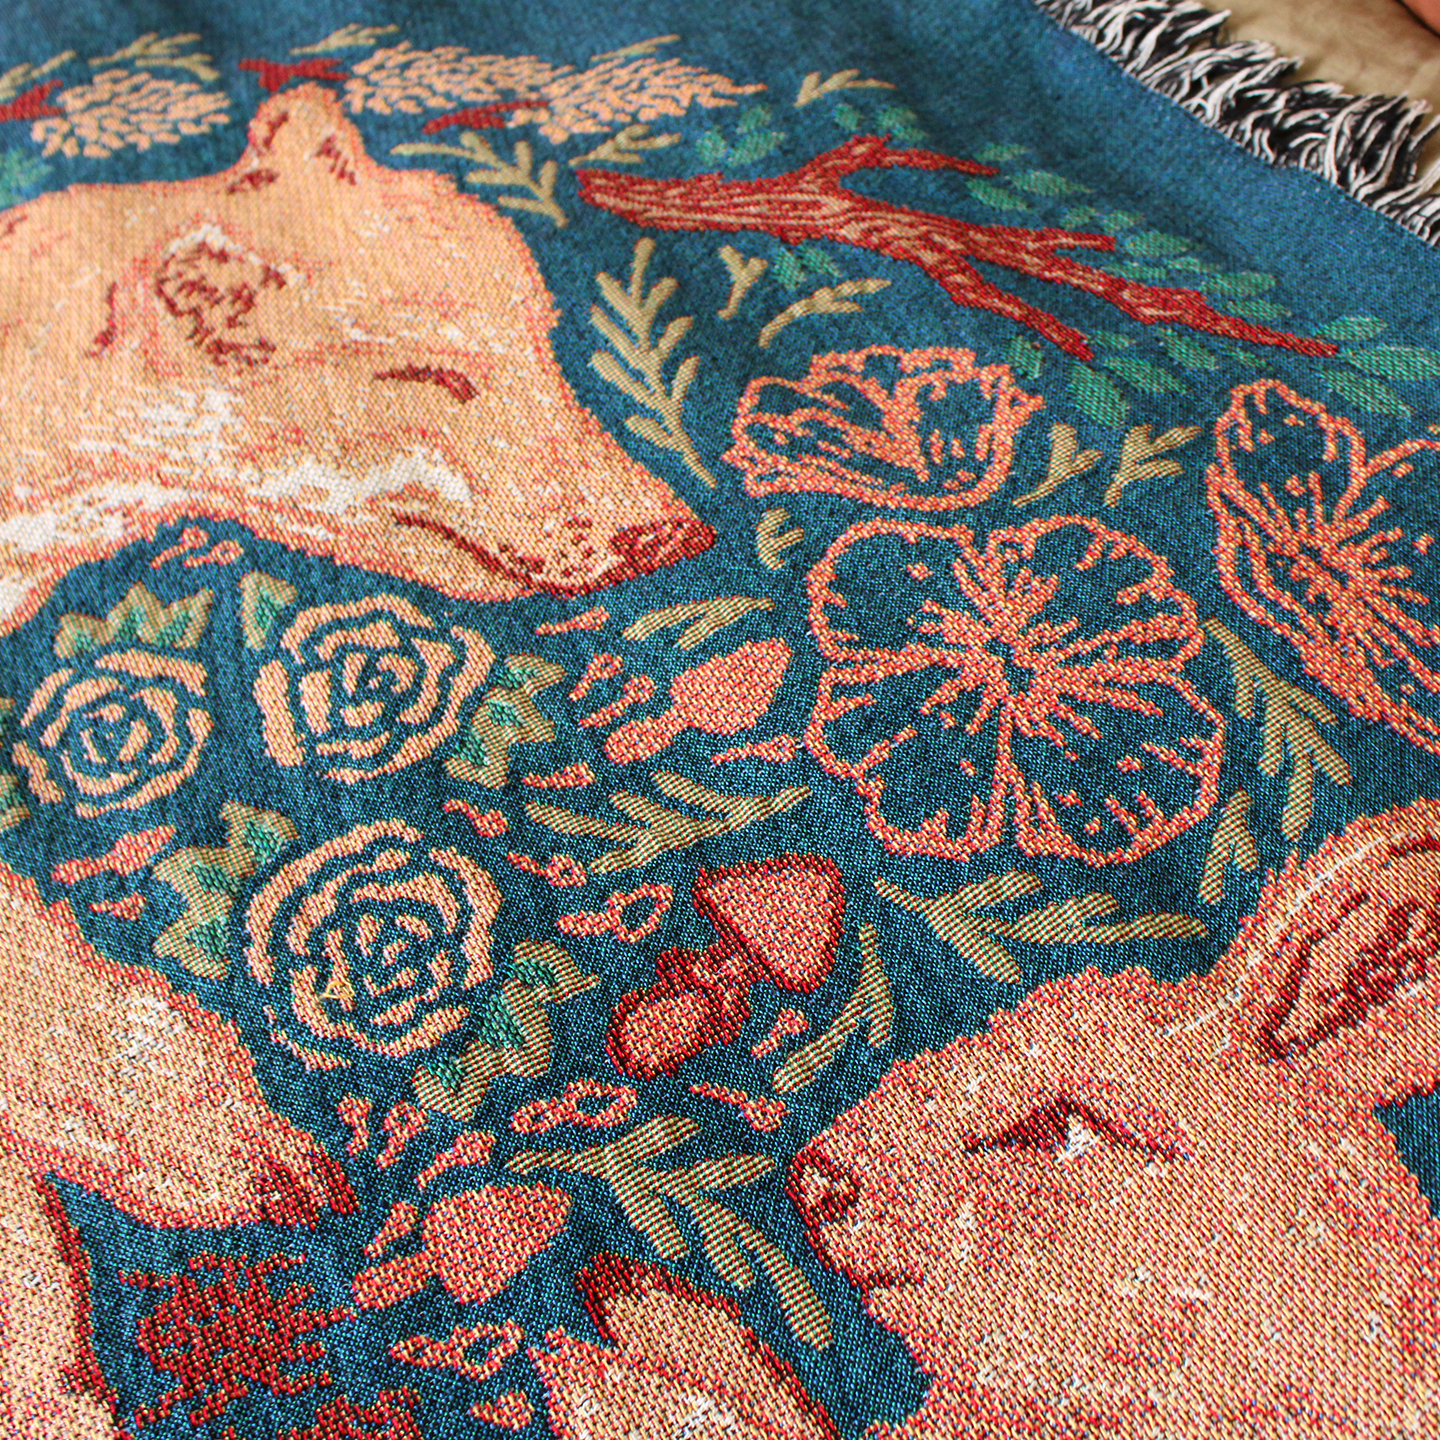 Woven Blanket Tapestry: Fox & Hare